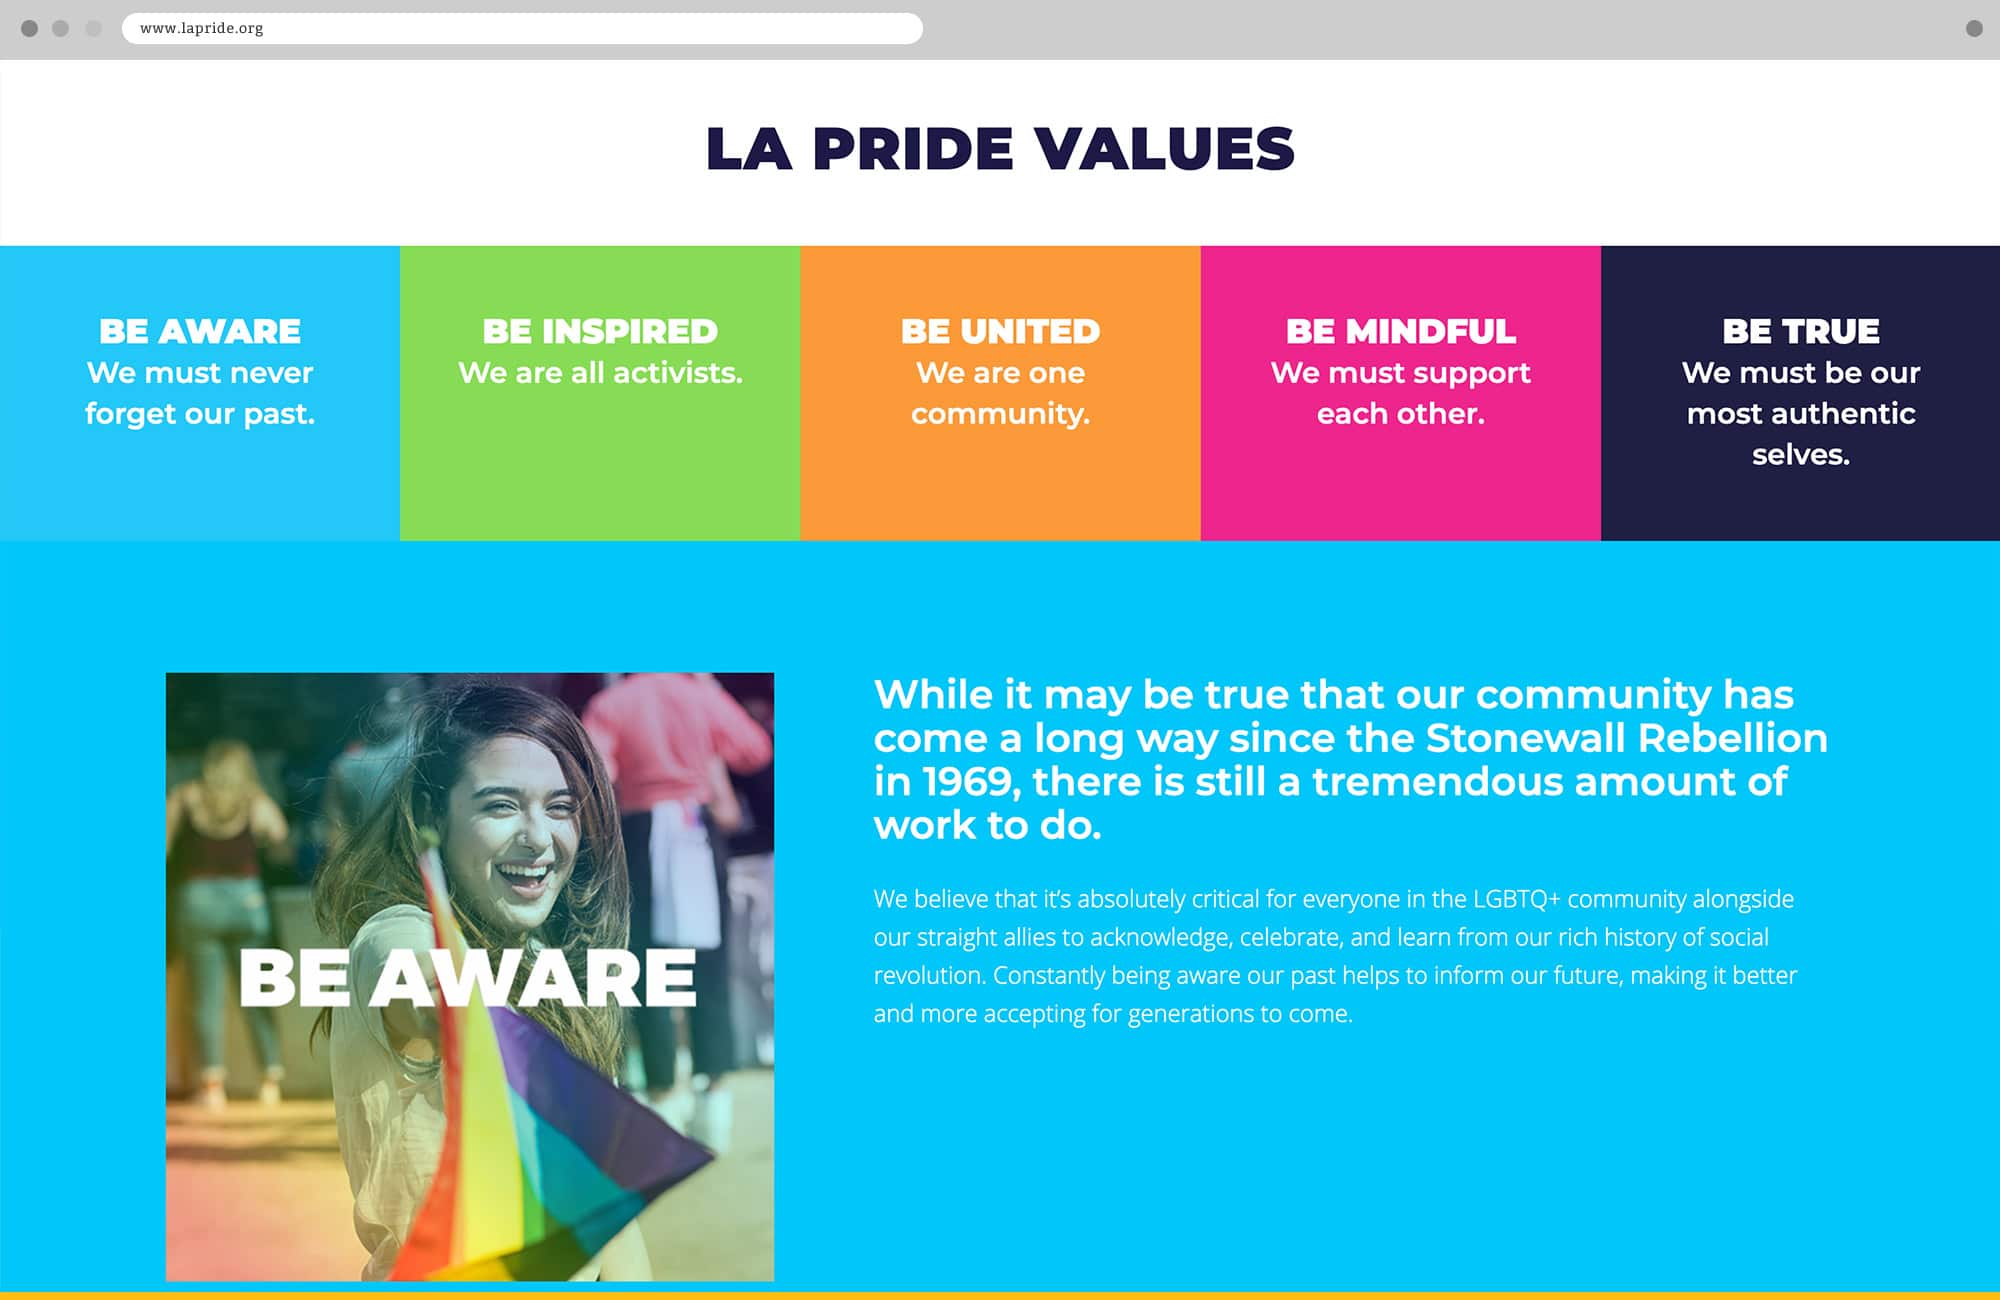 Punch - LA Pride Website Values